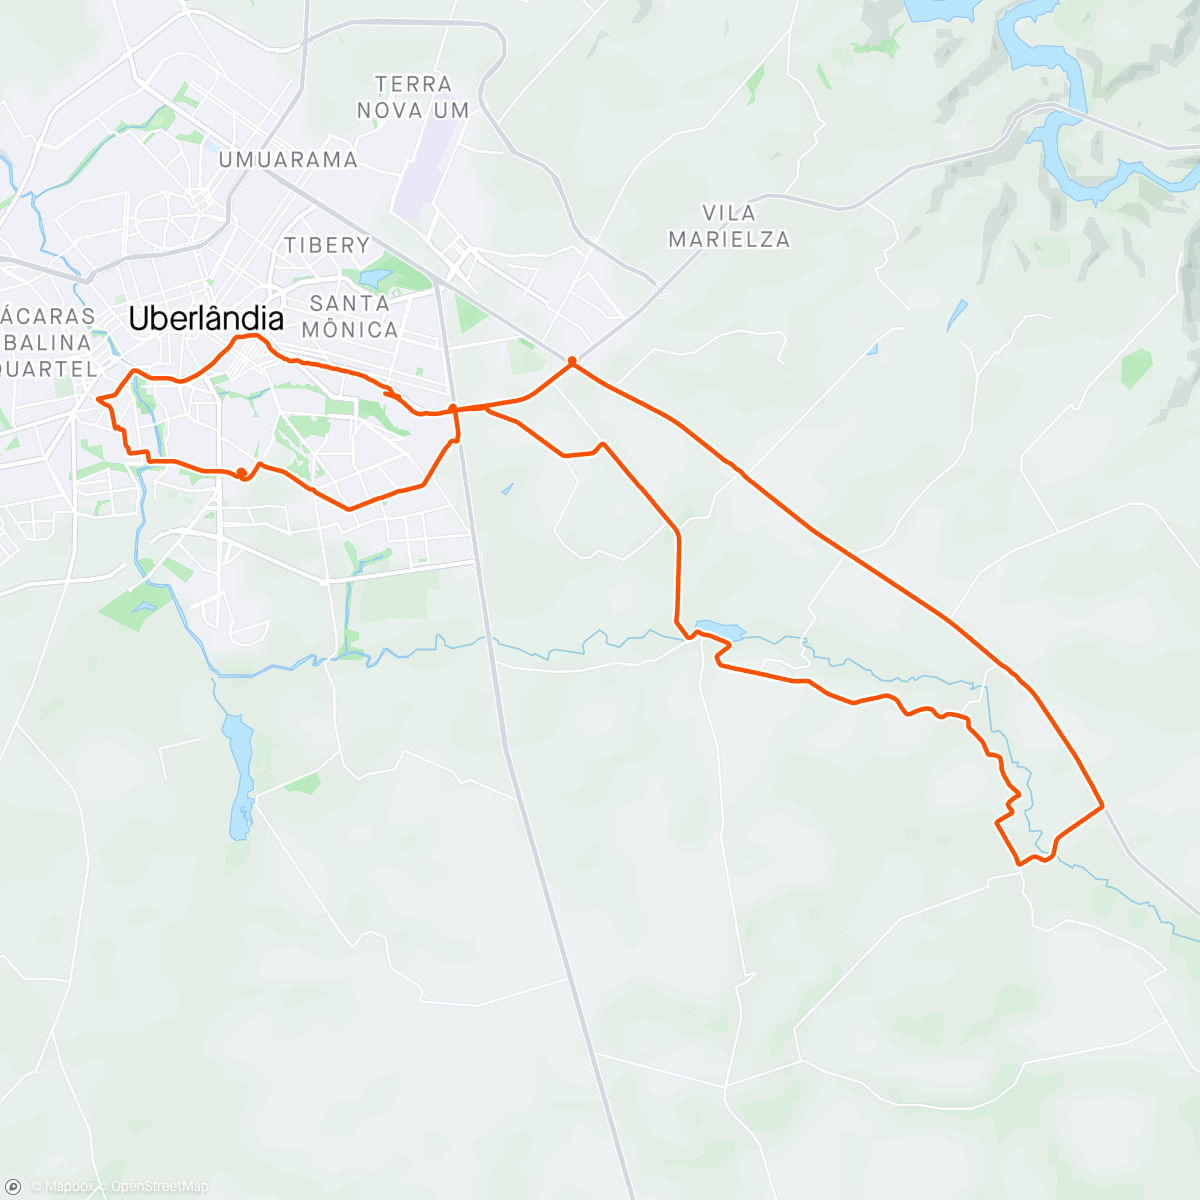 Mapa da atividade, ATV. FIS. 117/2.024
TRILHA DO PÃO DE QUEIJO 
70 kms